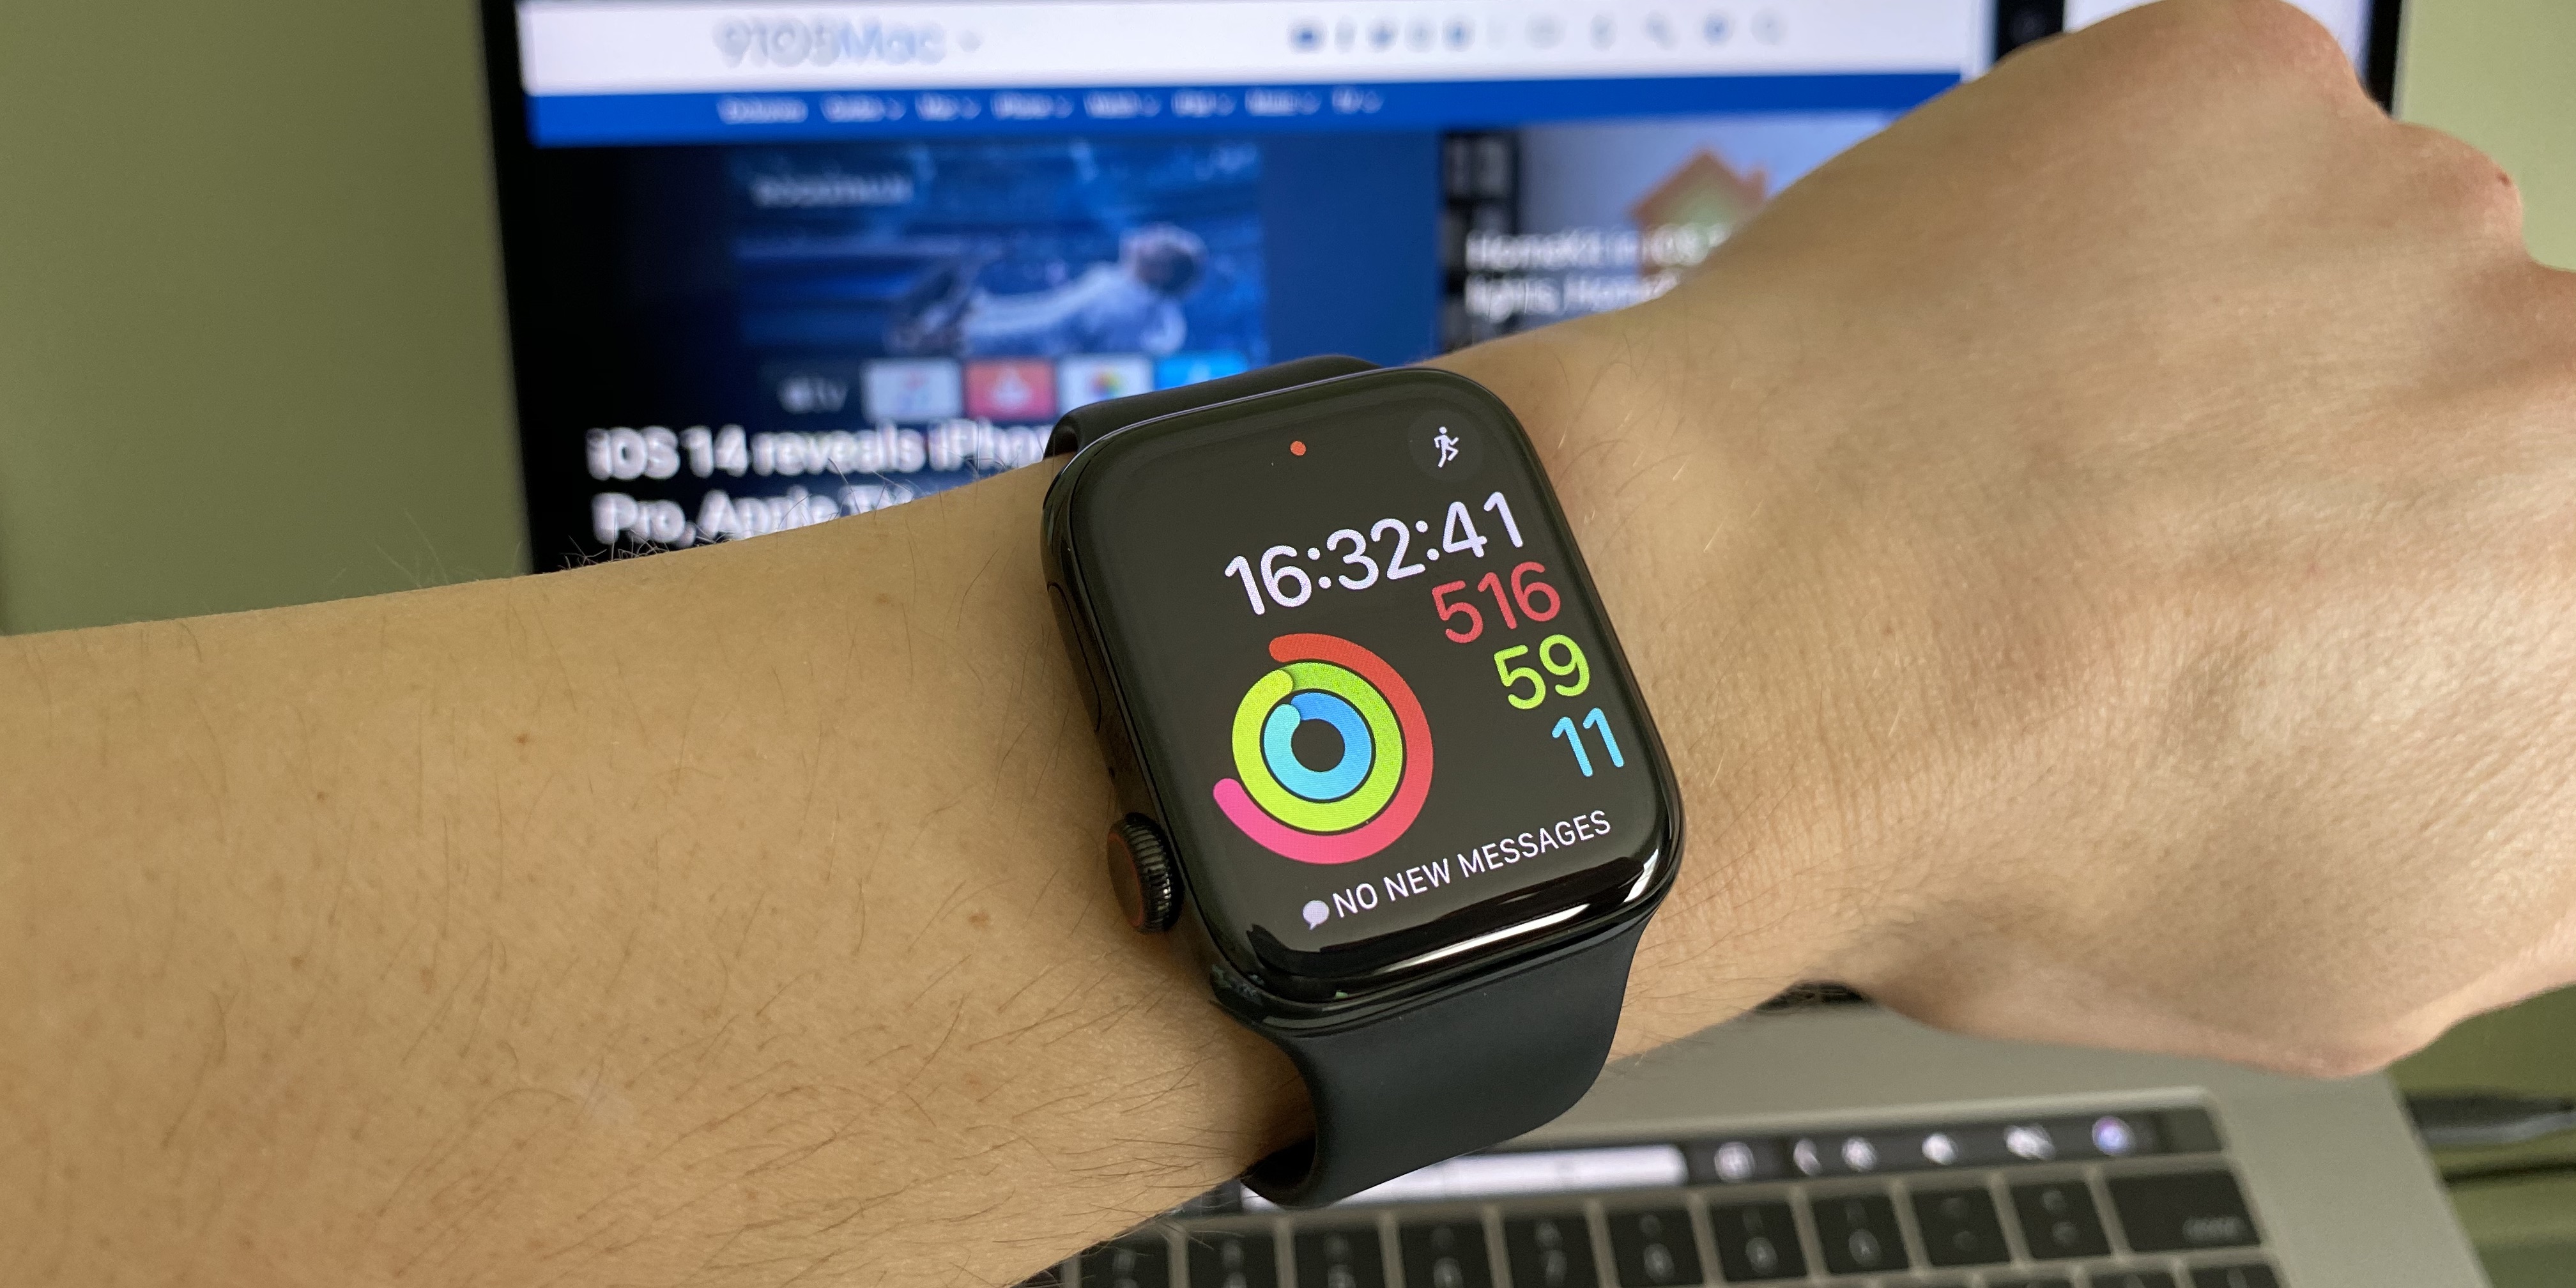 Как установить часы apple watch